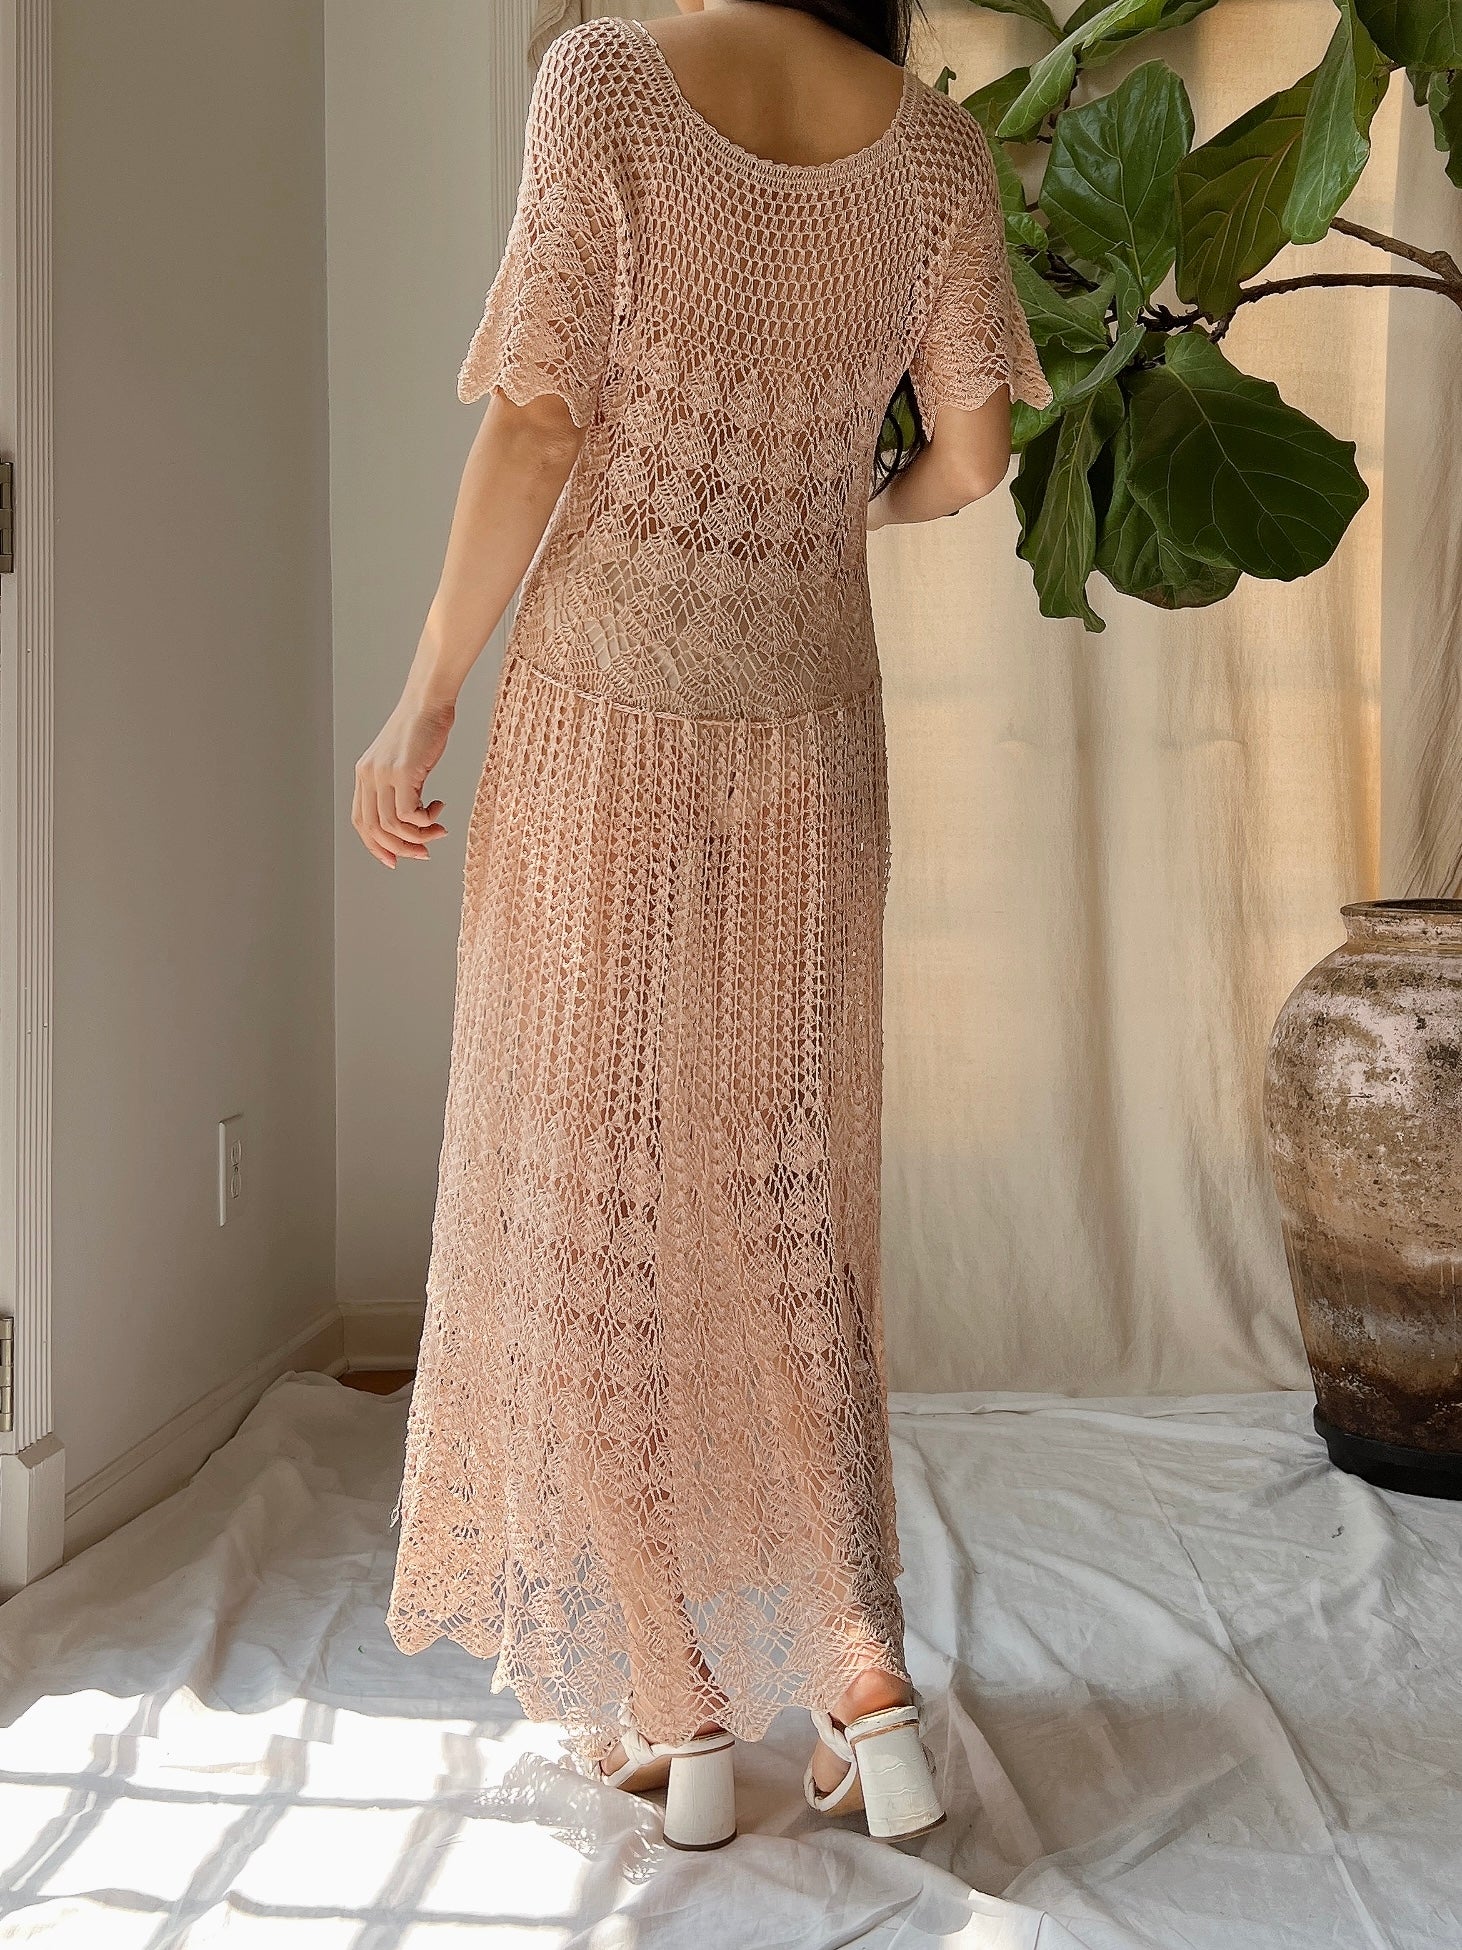 1970s Dusty Pink Crochet Dress - S-M